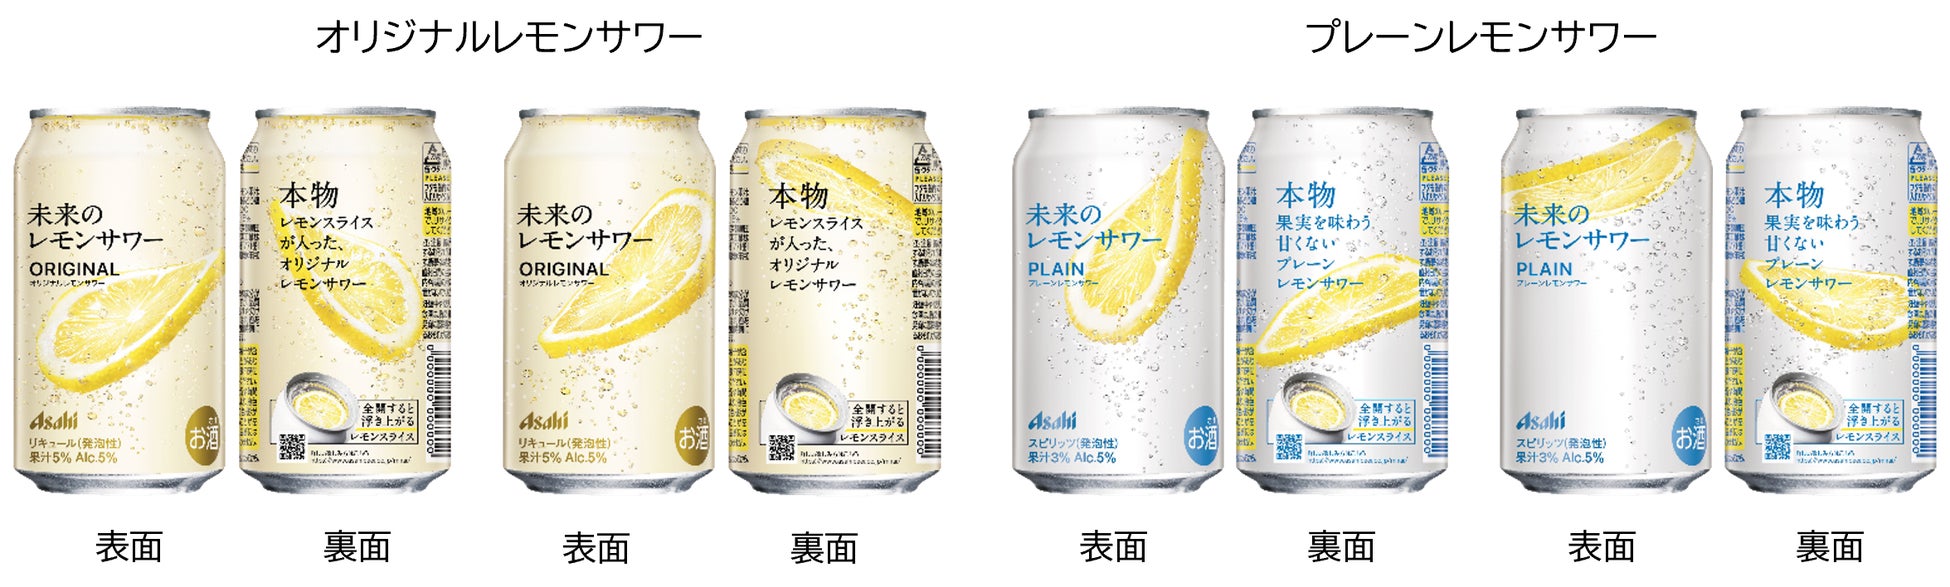 ノンアルコールビールテイスト飲料『アサヒ ゼロ』4月9日全国発売開始